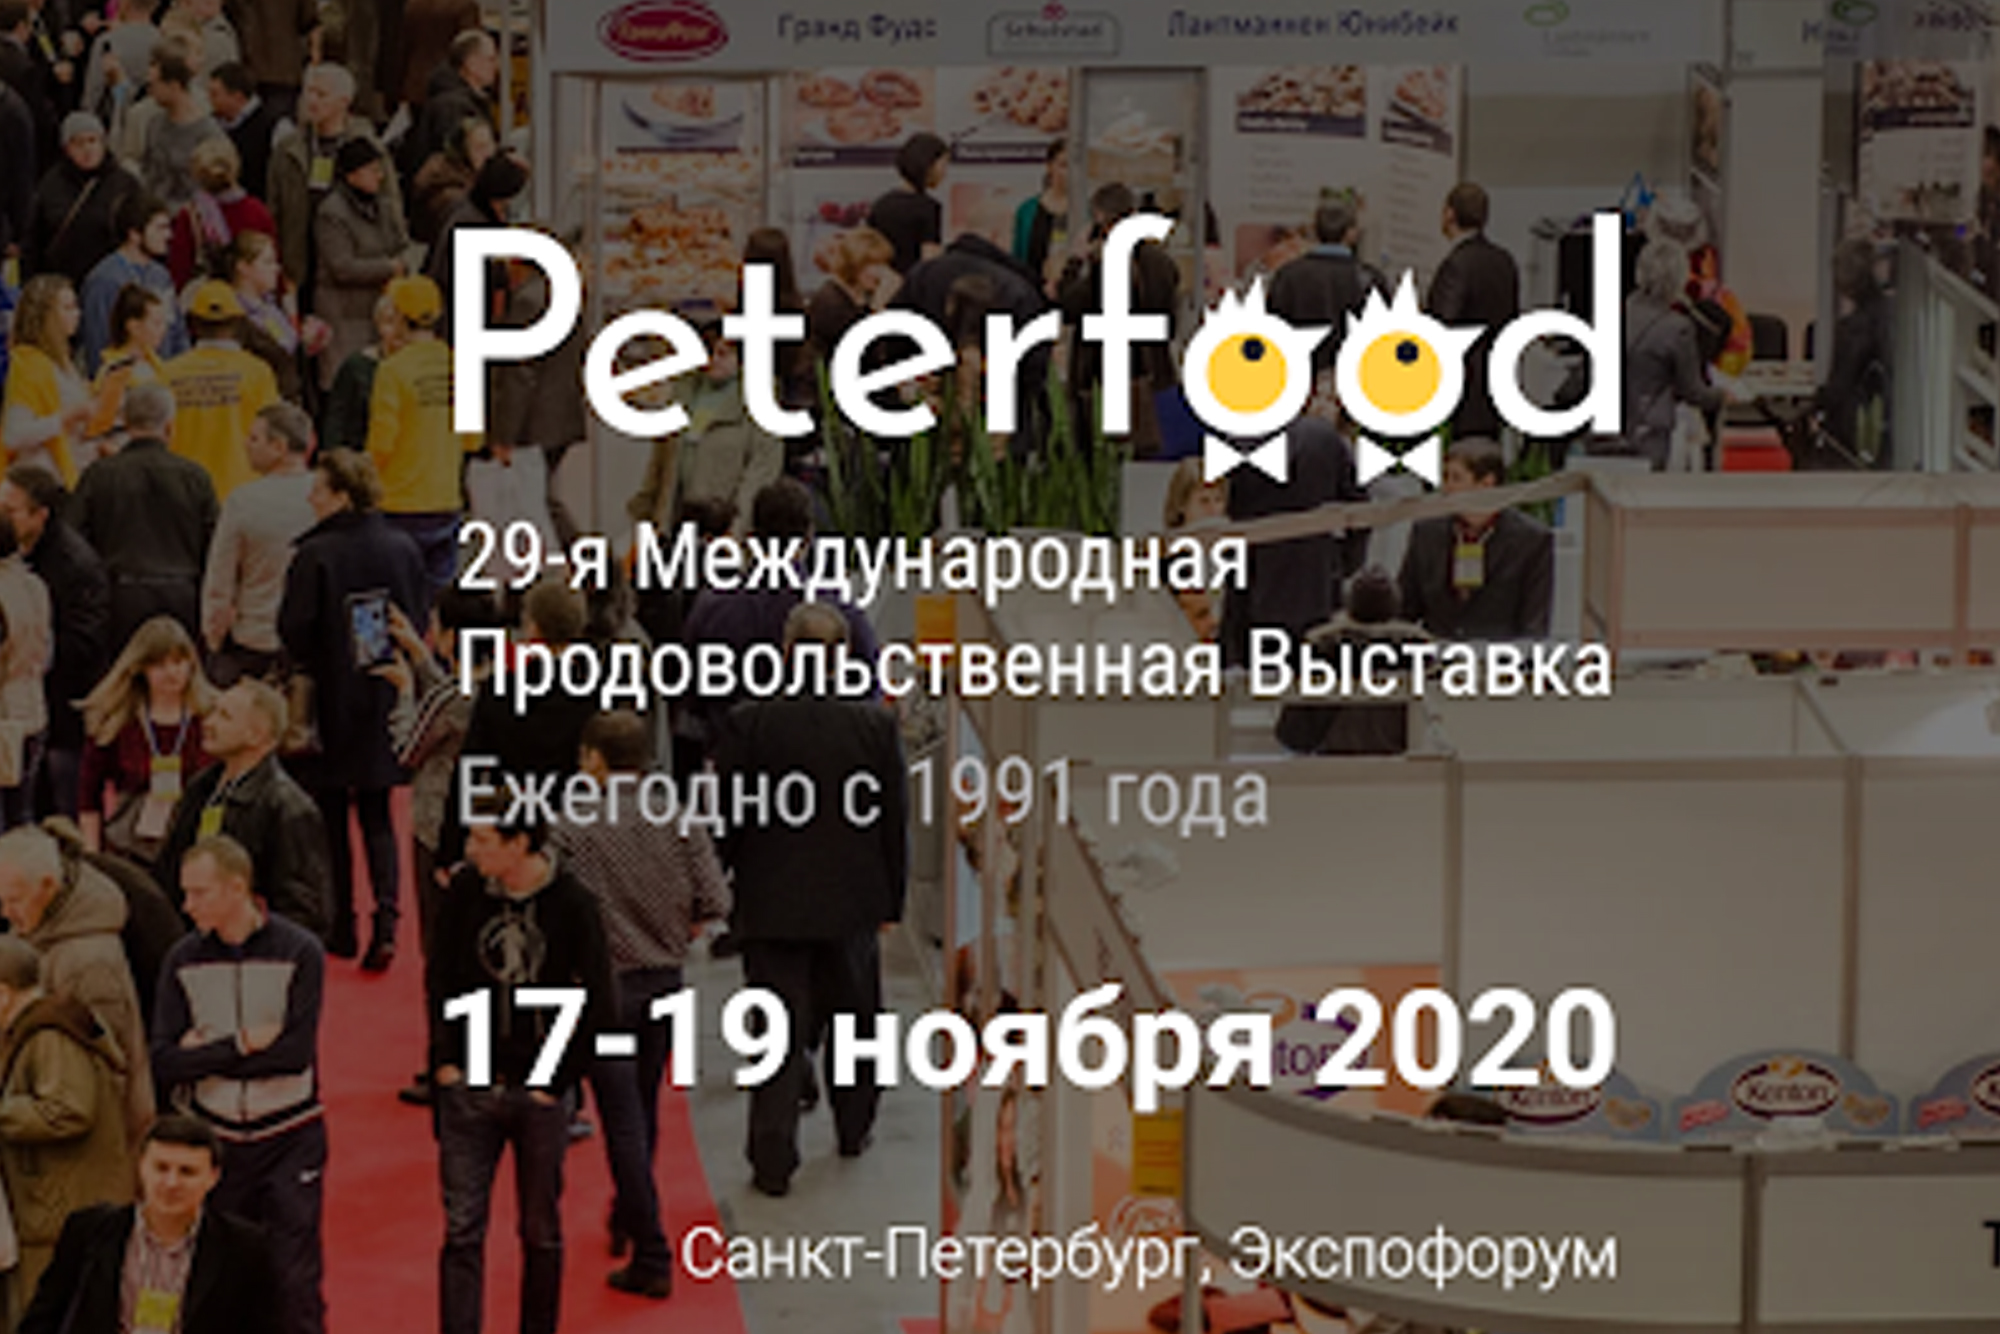 29-я Международная продовольственная выставка «Петерфуд-2020» состоится в ноябре